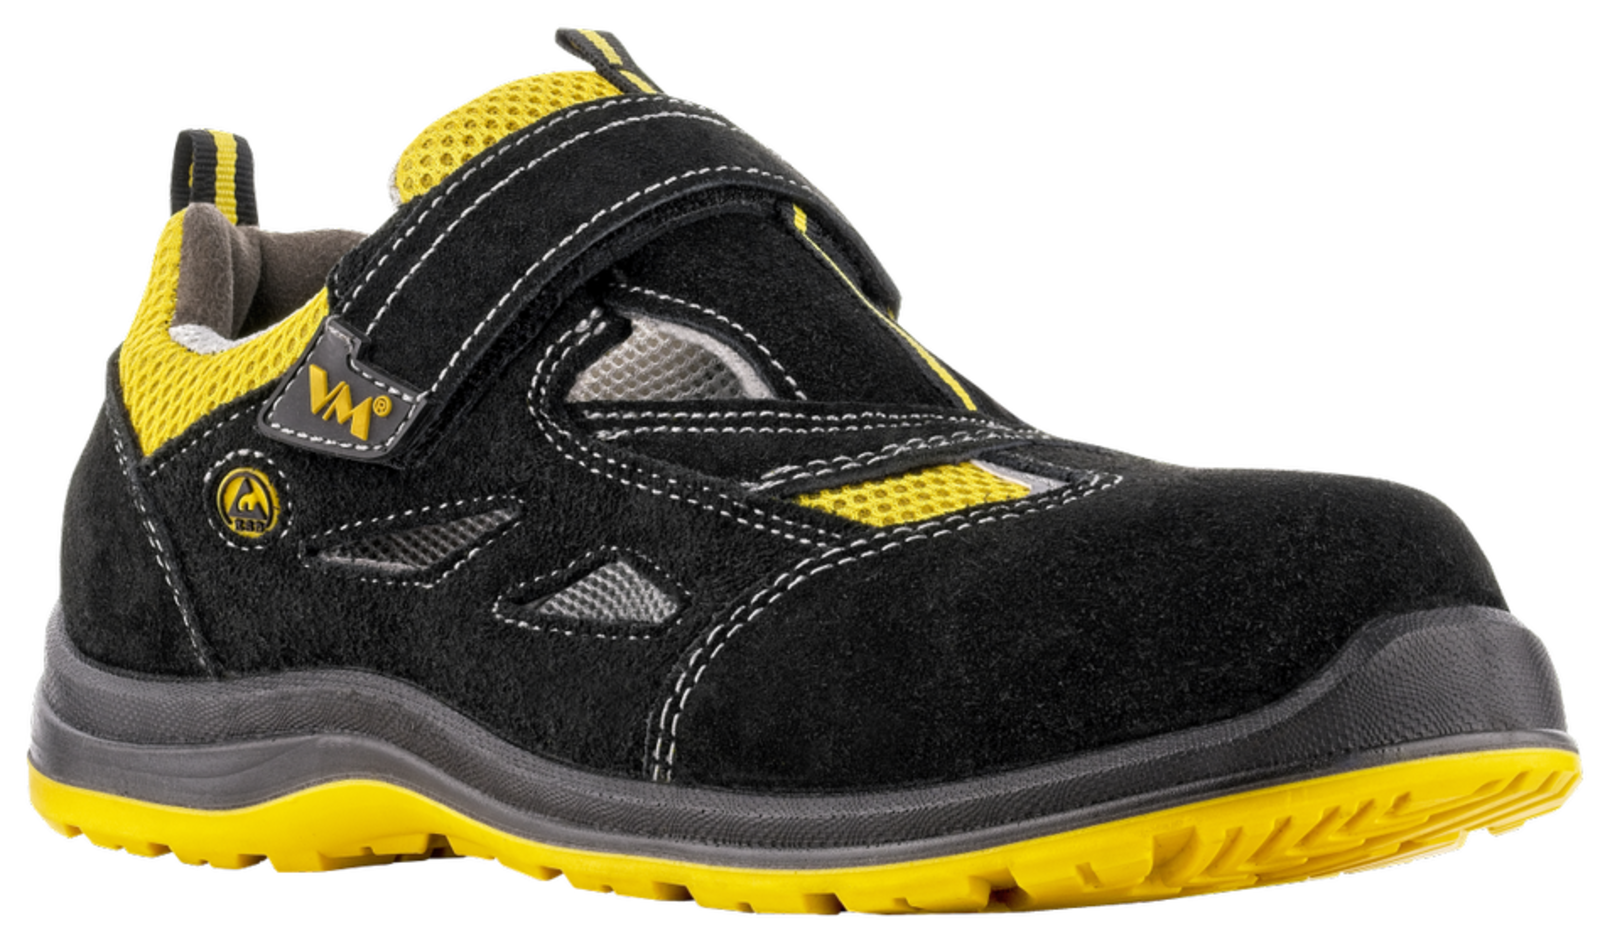 Bezpečnostné sandále VM Michigan S1P ESD - veľkosť: 46, farba: čierna/žltá